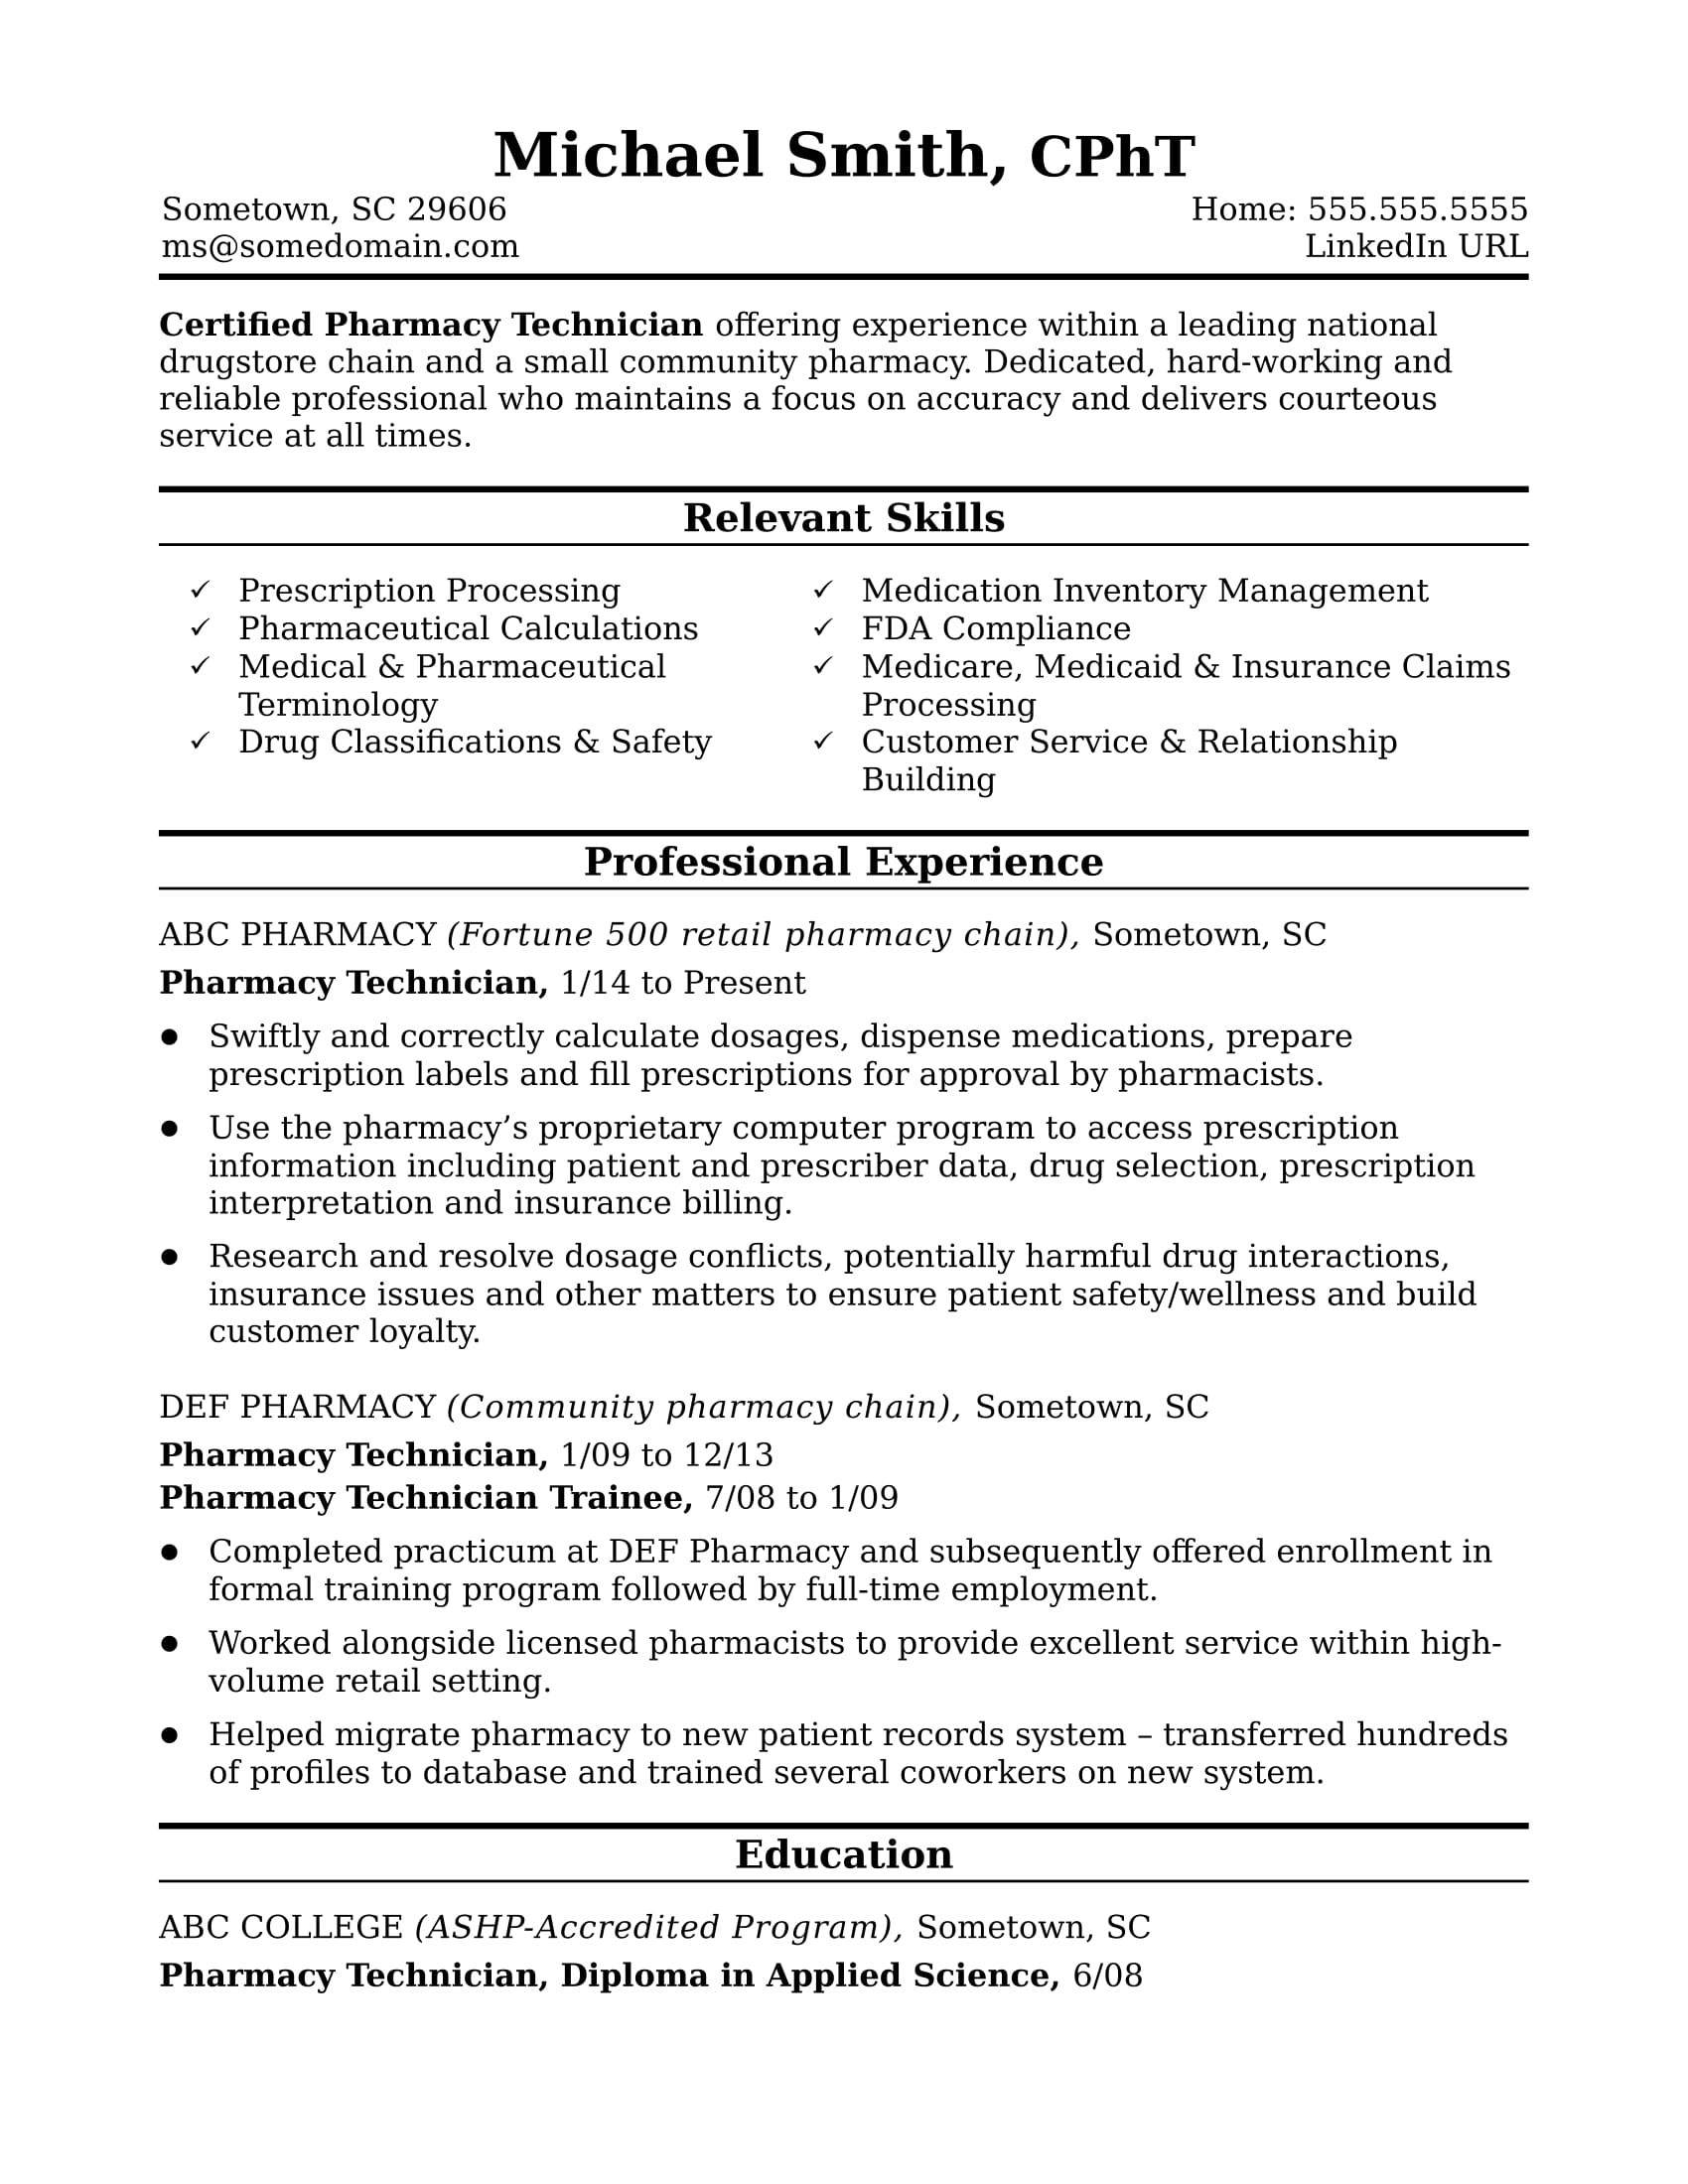 Order Entry Pharmacy Technician Resume Sample Midlevel Pharmacy Technician Resume Sample Monster.com